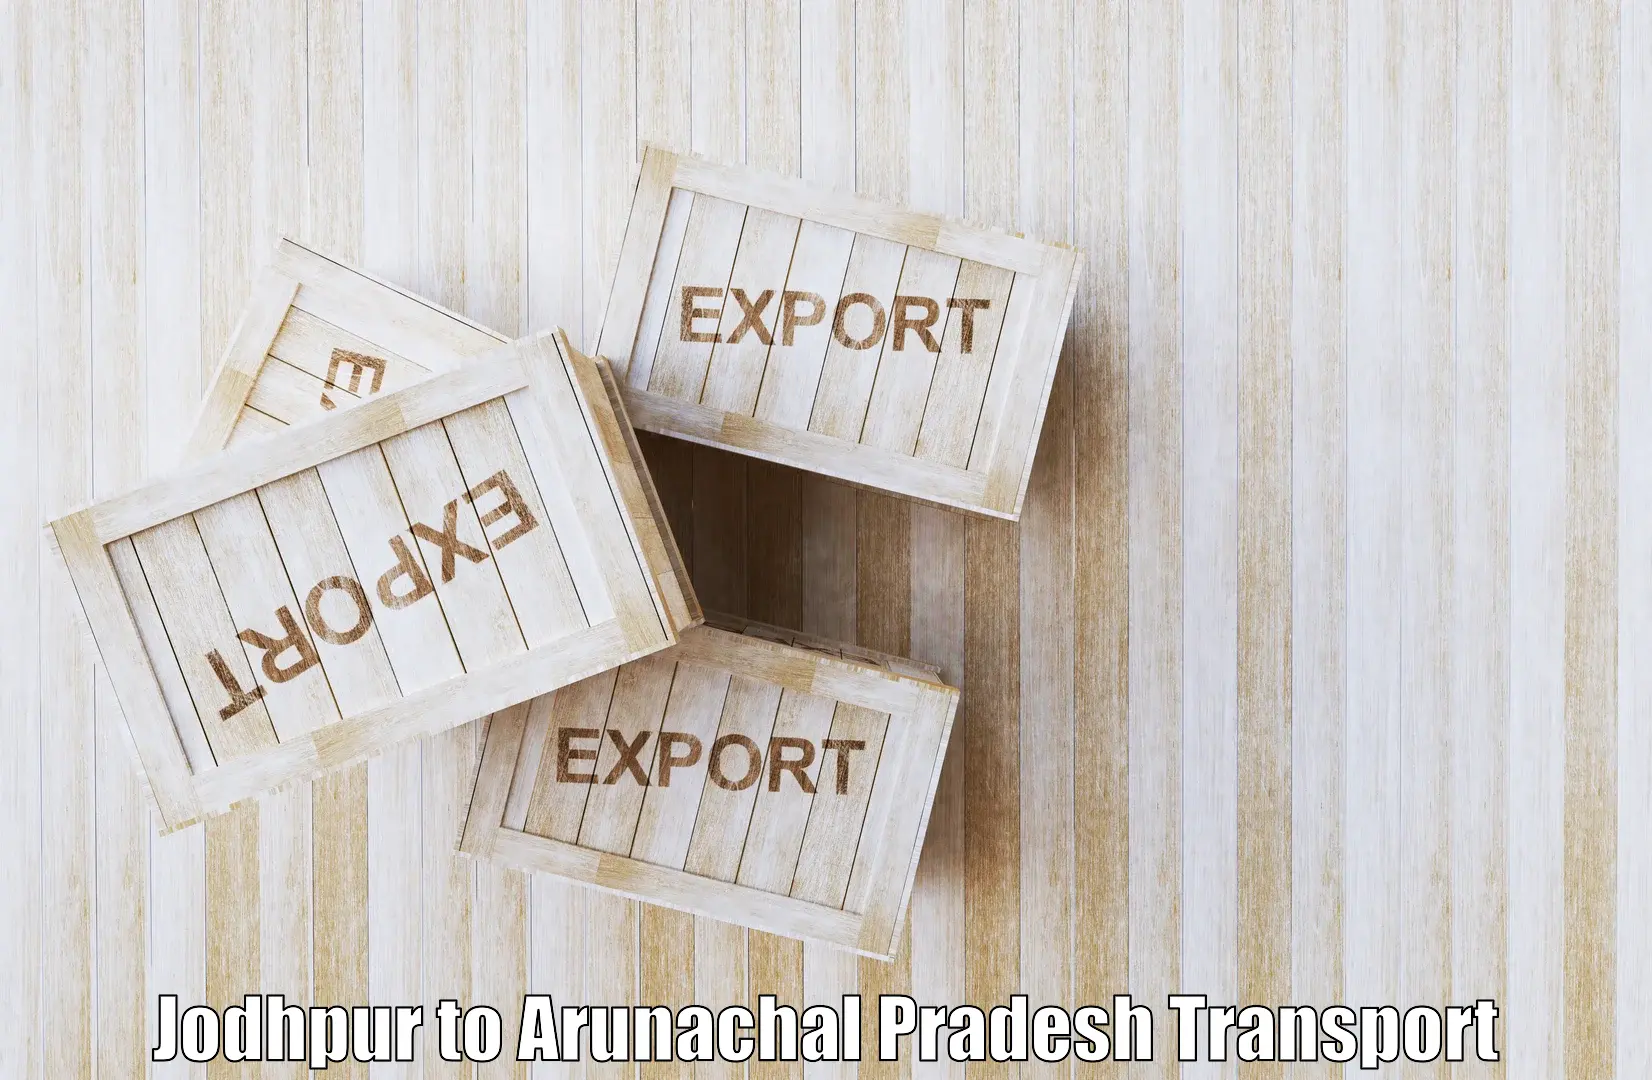 Interstate transport services Jodhpur to Arunachal Pradesh